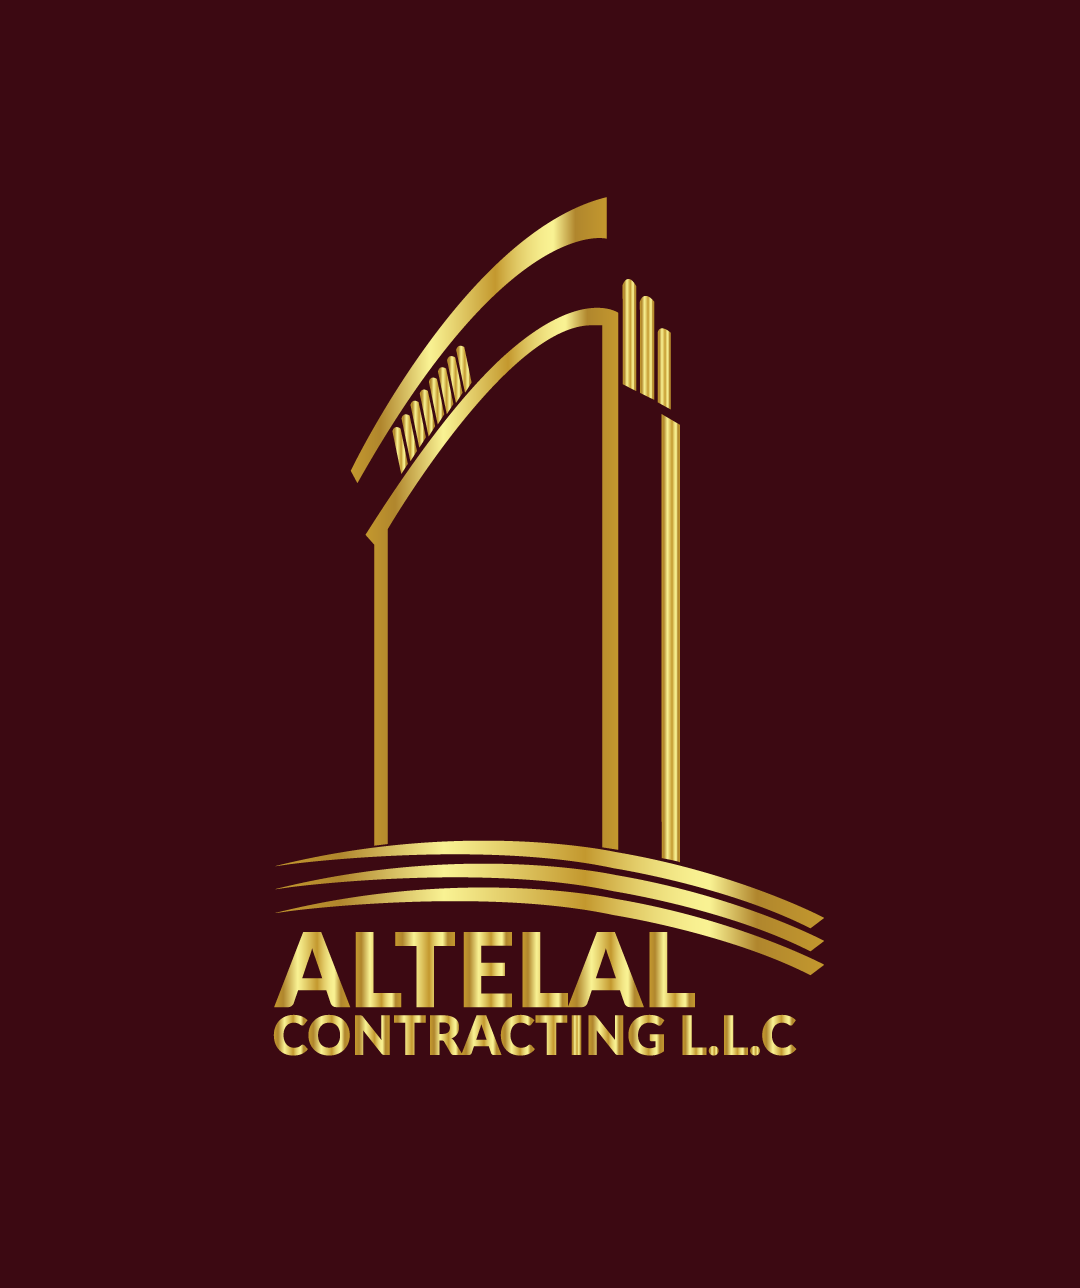 Al Telal Contracting LLC